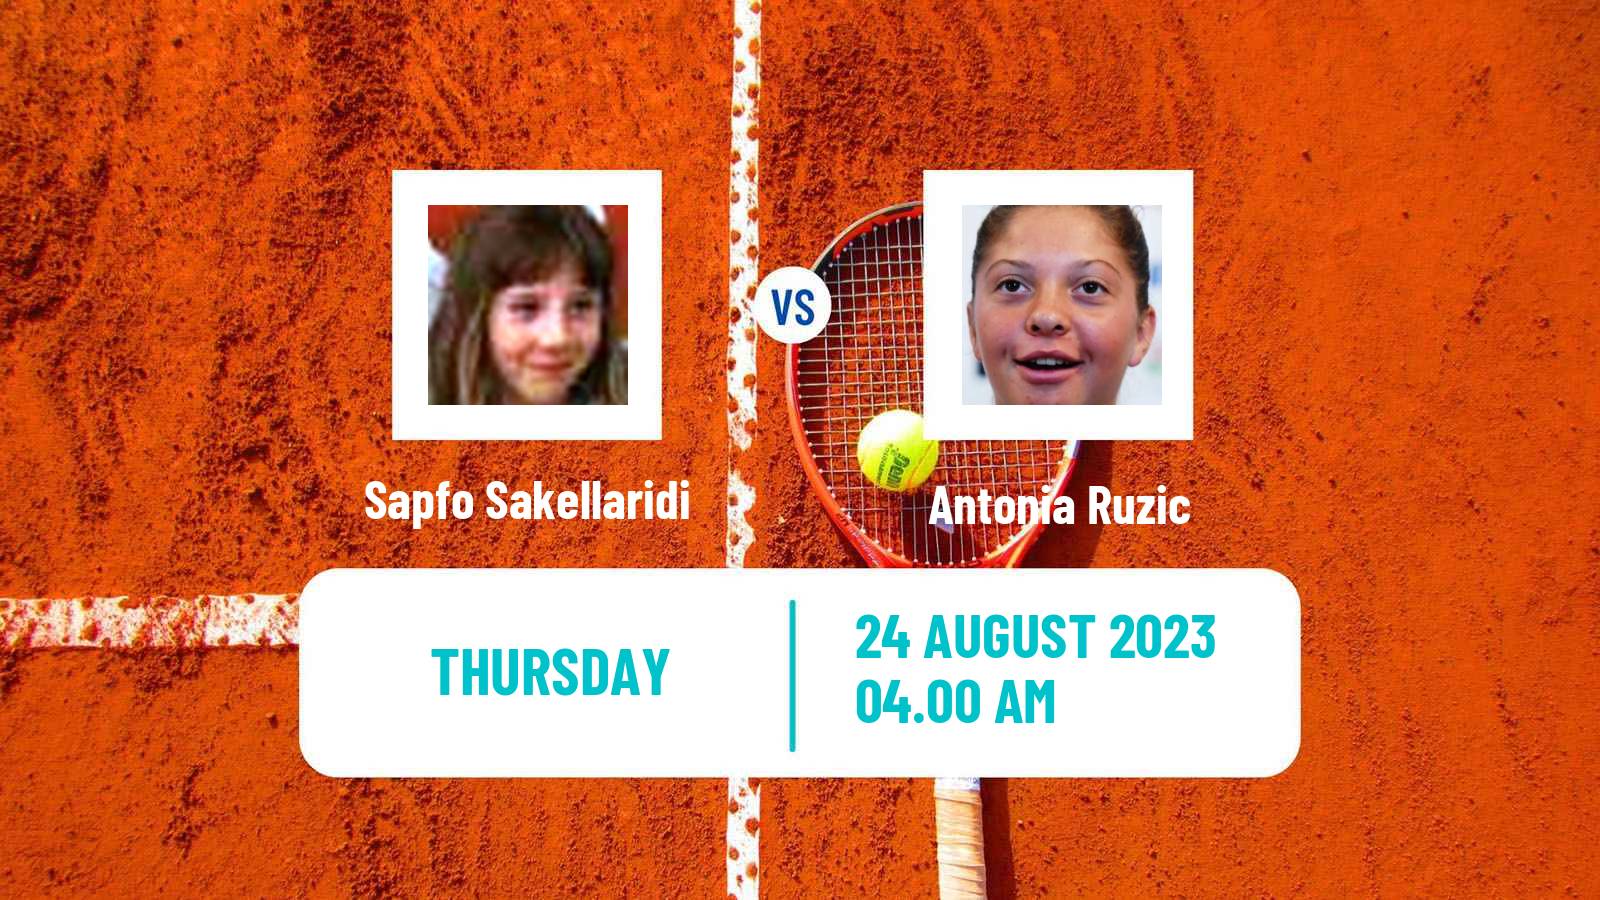 Tennis ITF W60 Prerov Women Sapfo Sakellaridi - Antonia Ruzic